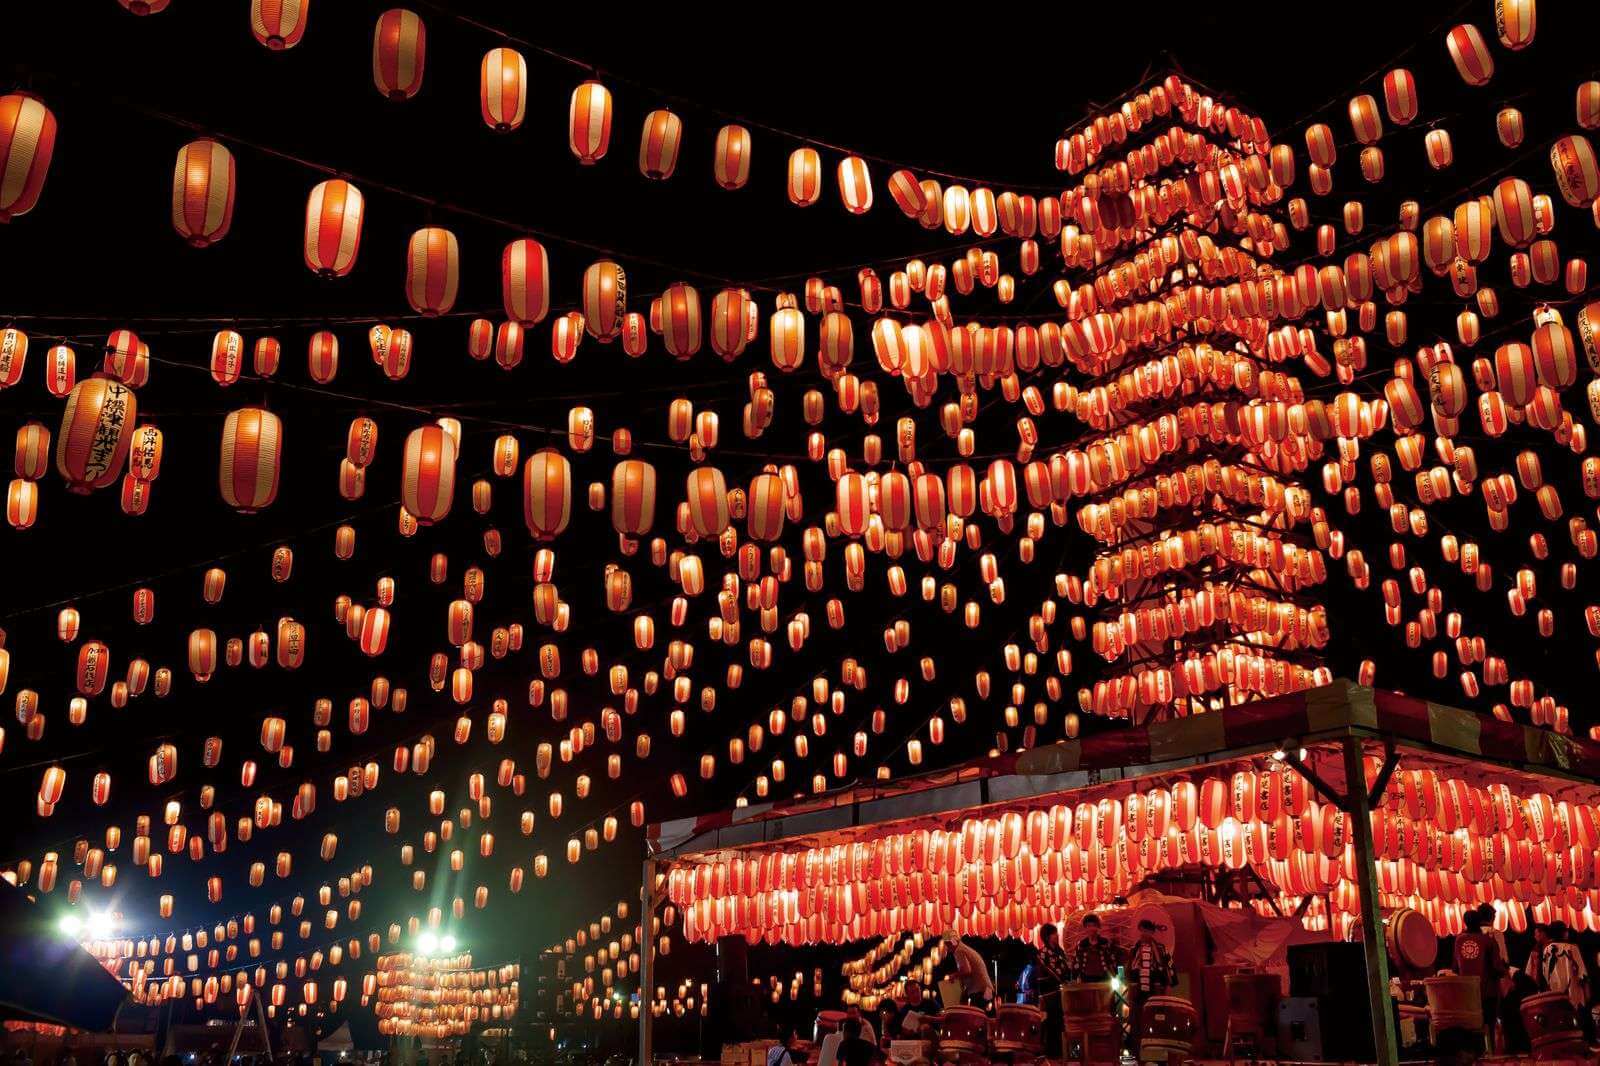 Những chiếc đèn lồng rực rỡ sáng được treo lên trong lễ hội Obon thắp sáng cả vùng trời